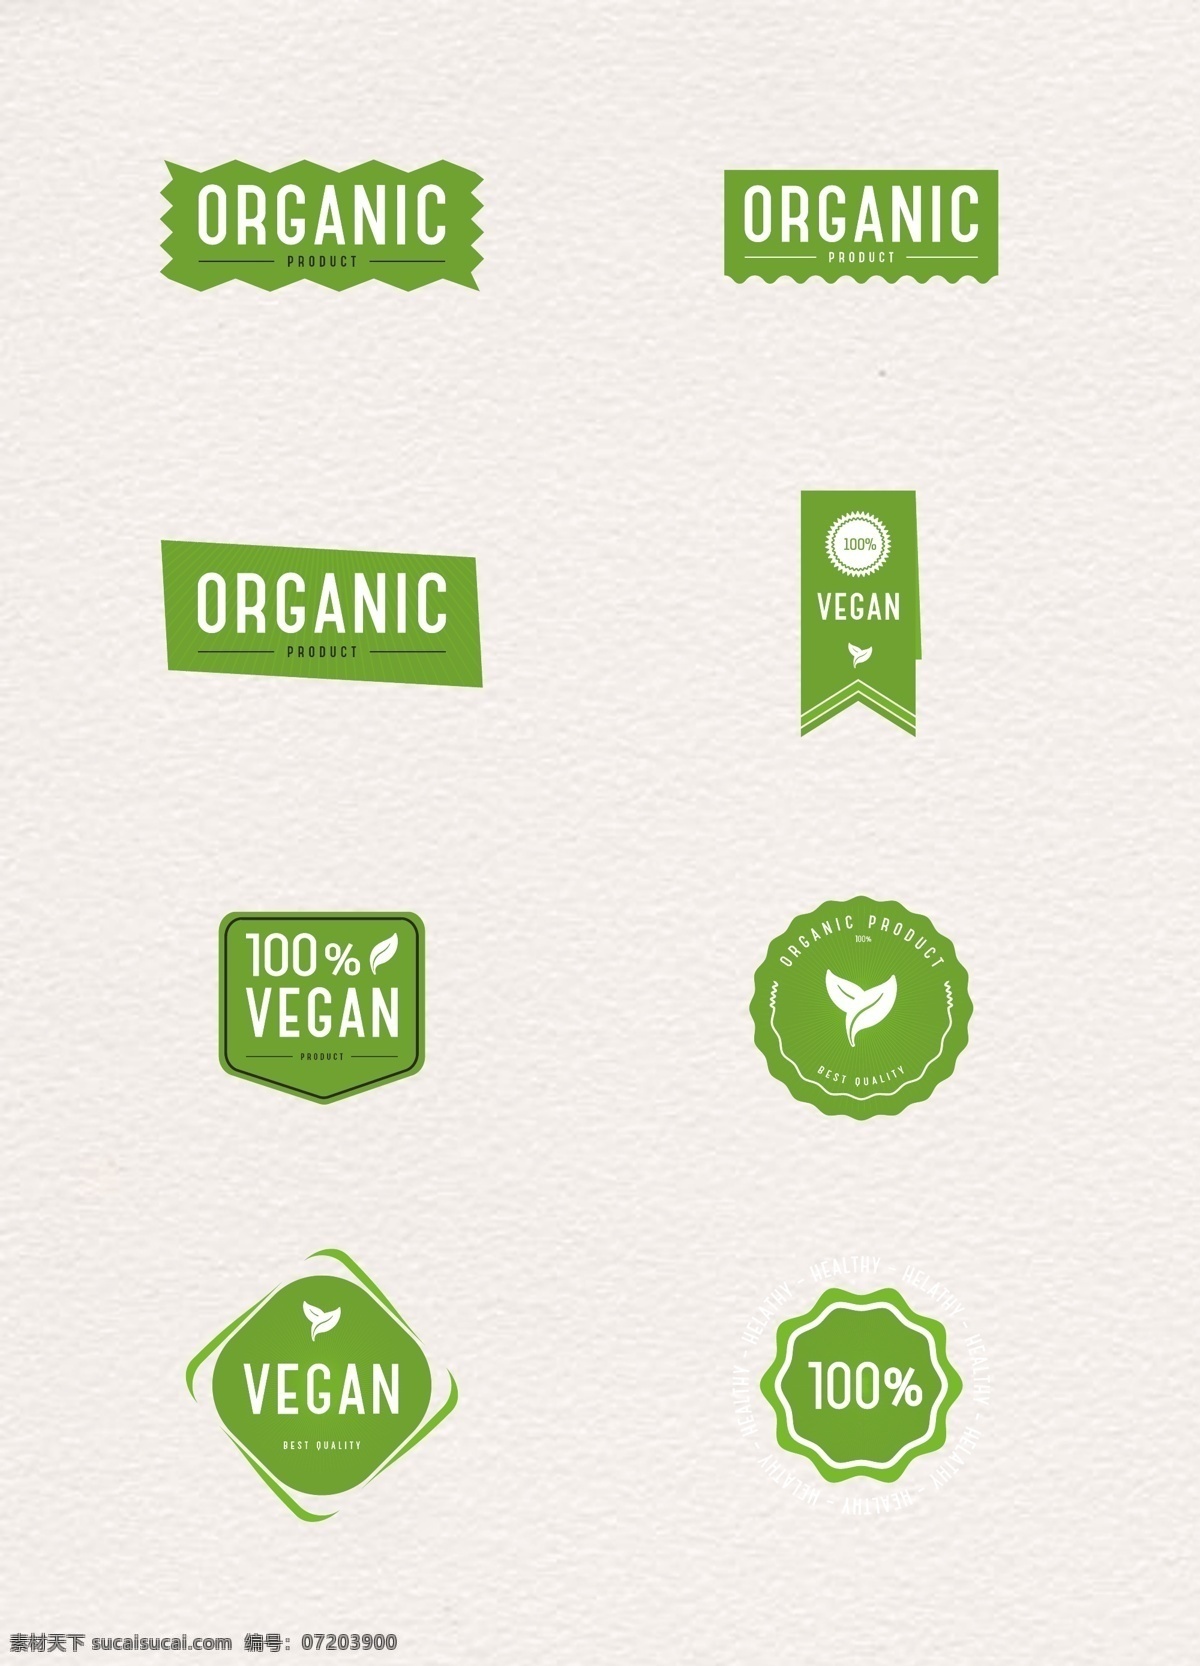 绿色 有机 物质 素食 标签 简约 矢量 标签设计 促销标签 有机食品 有机物质 自然食品